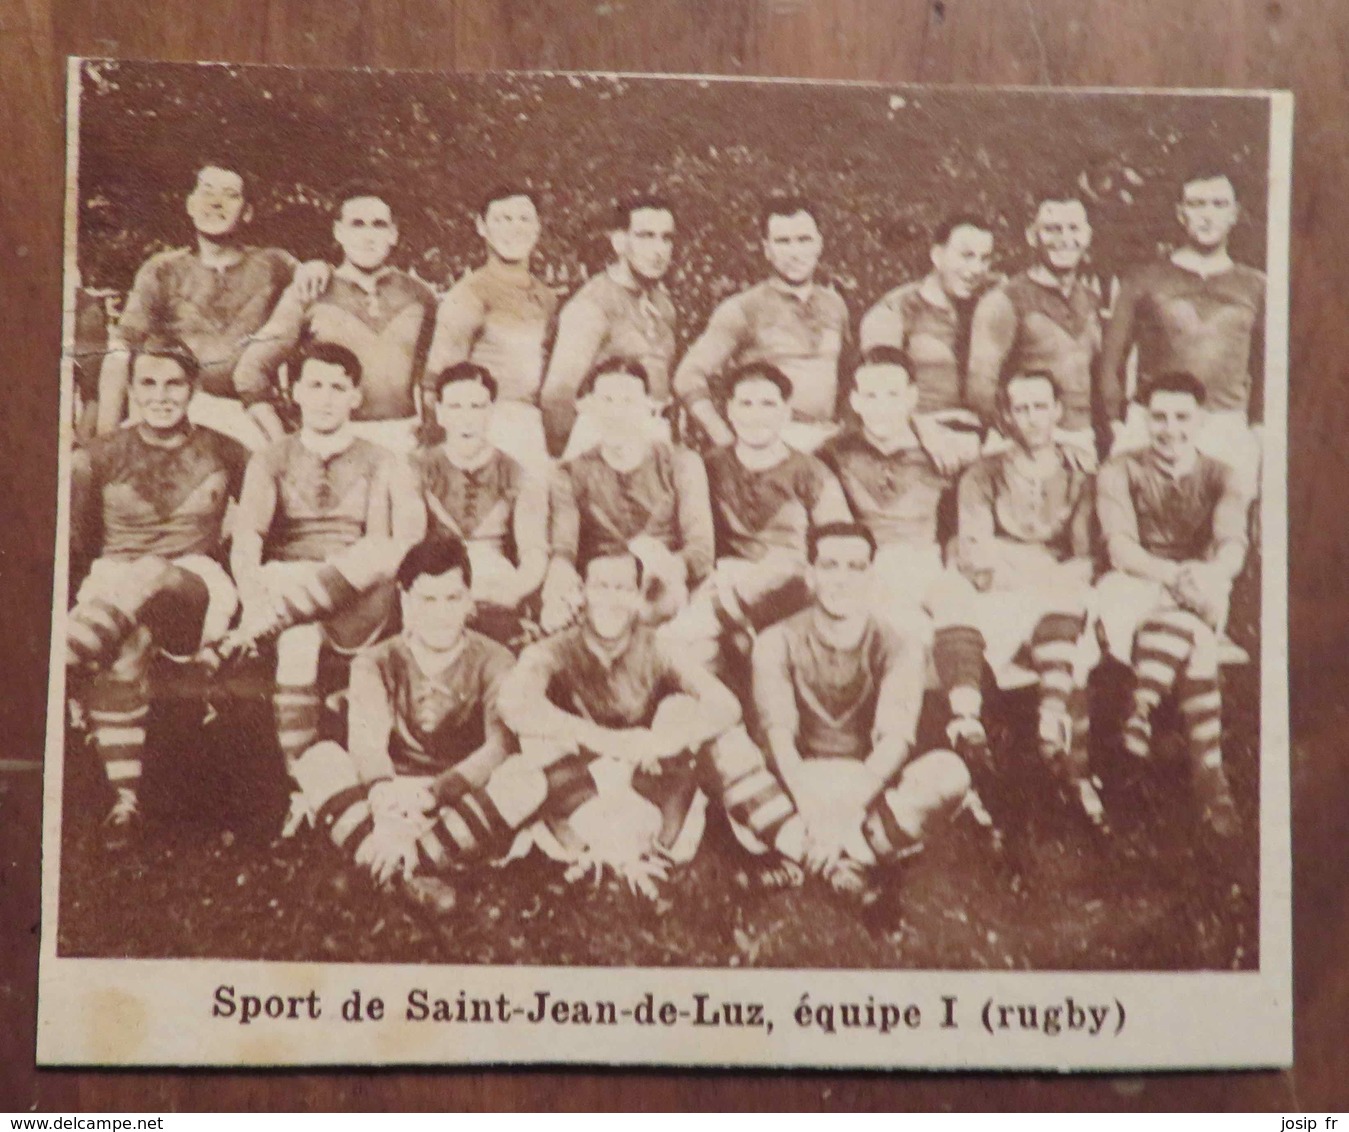 SAINT-JEAN-DE-LUZ (PAYS BASQUE): SPORT DE SAINT-JEAN DE LUZ (RUGBY) (PHOTO DE JOURNAL: 11/1931) - Pays Basque